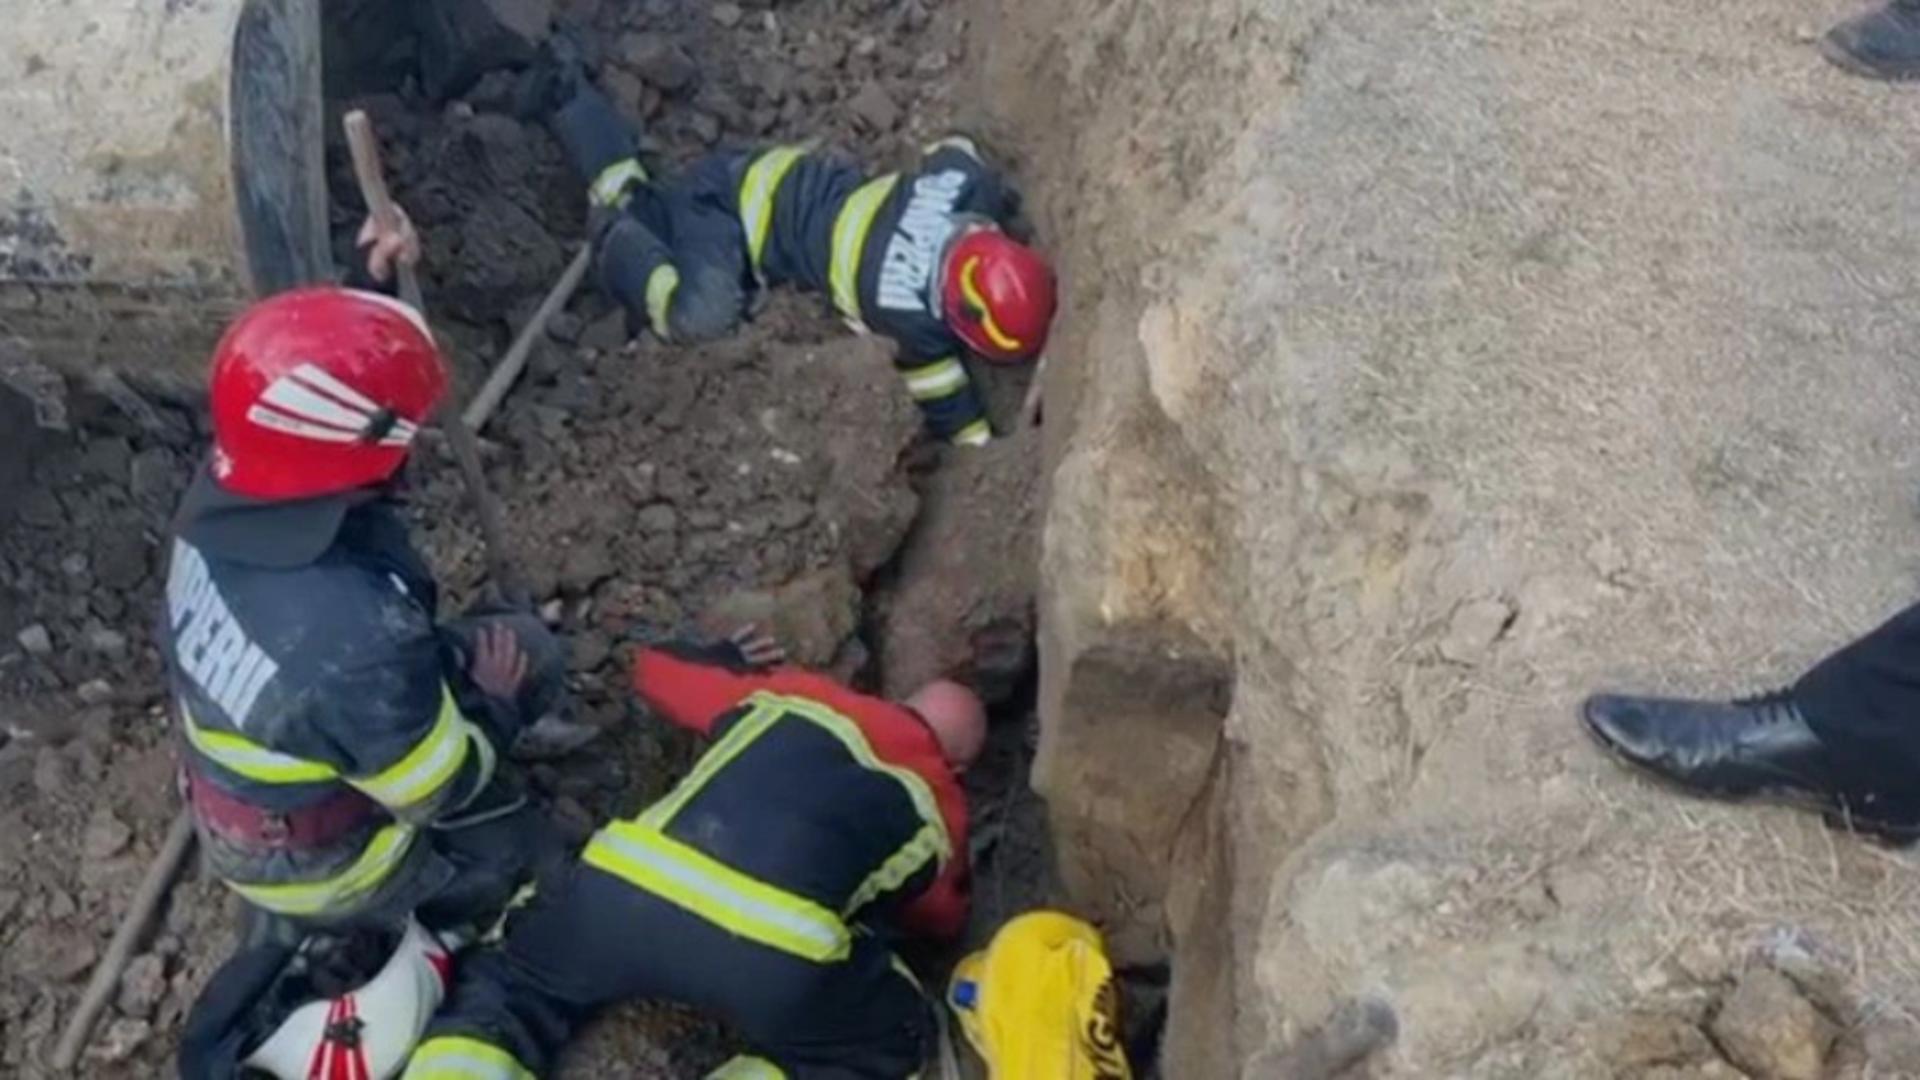 Vâlcea: Doi muncitori surprinși sub un mal de pământ. Unul dintre ei este acoperită complet